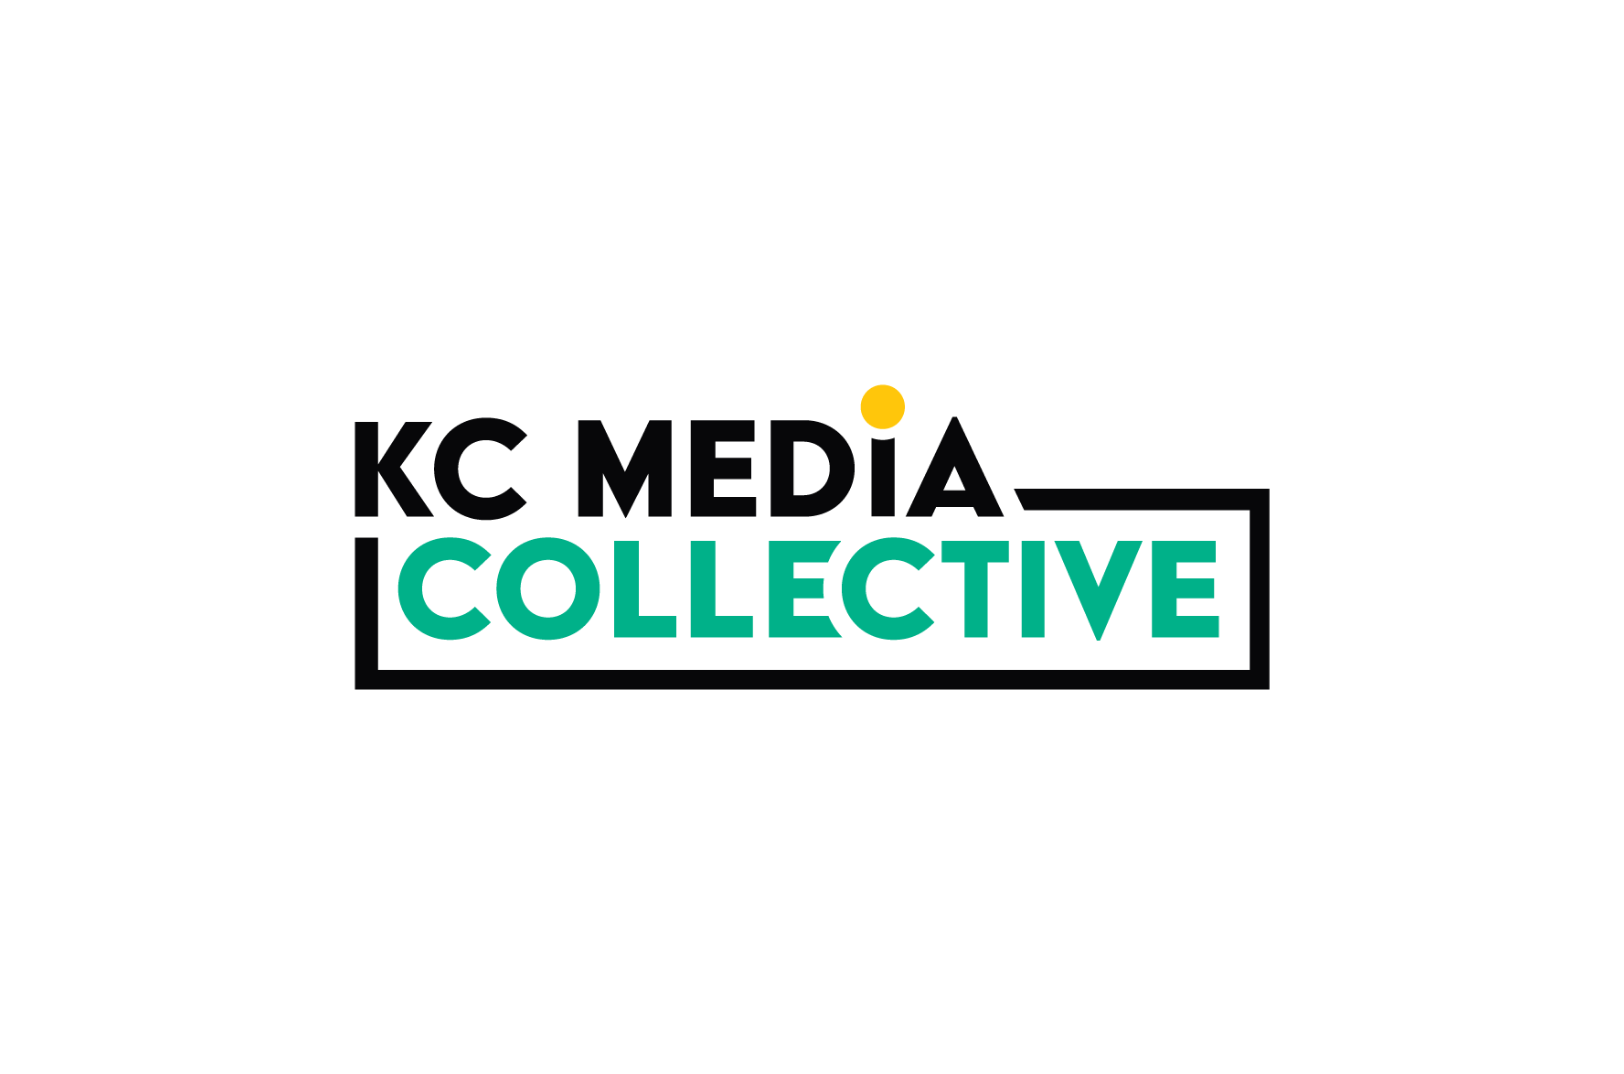 Turista Contento Cuestiones diplomáticas KC Media Collective